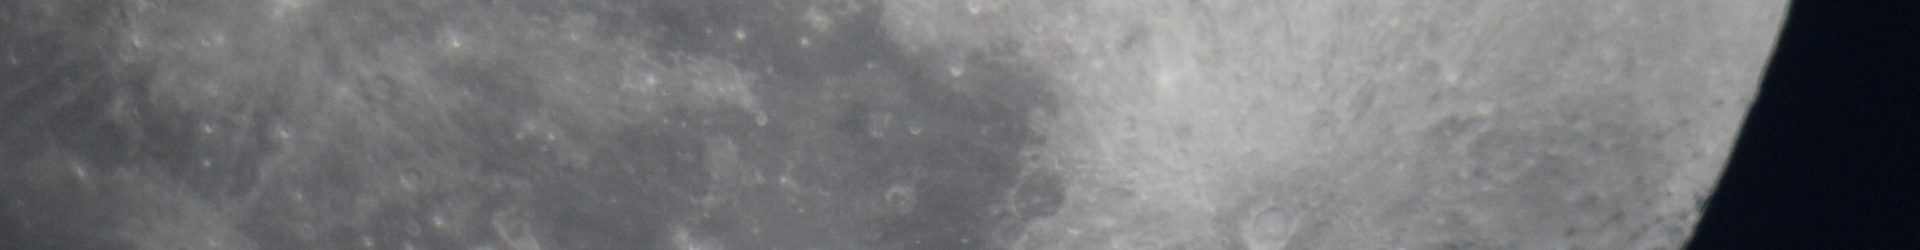 Mond am 19.04.2016